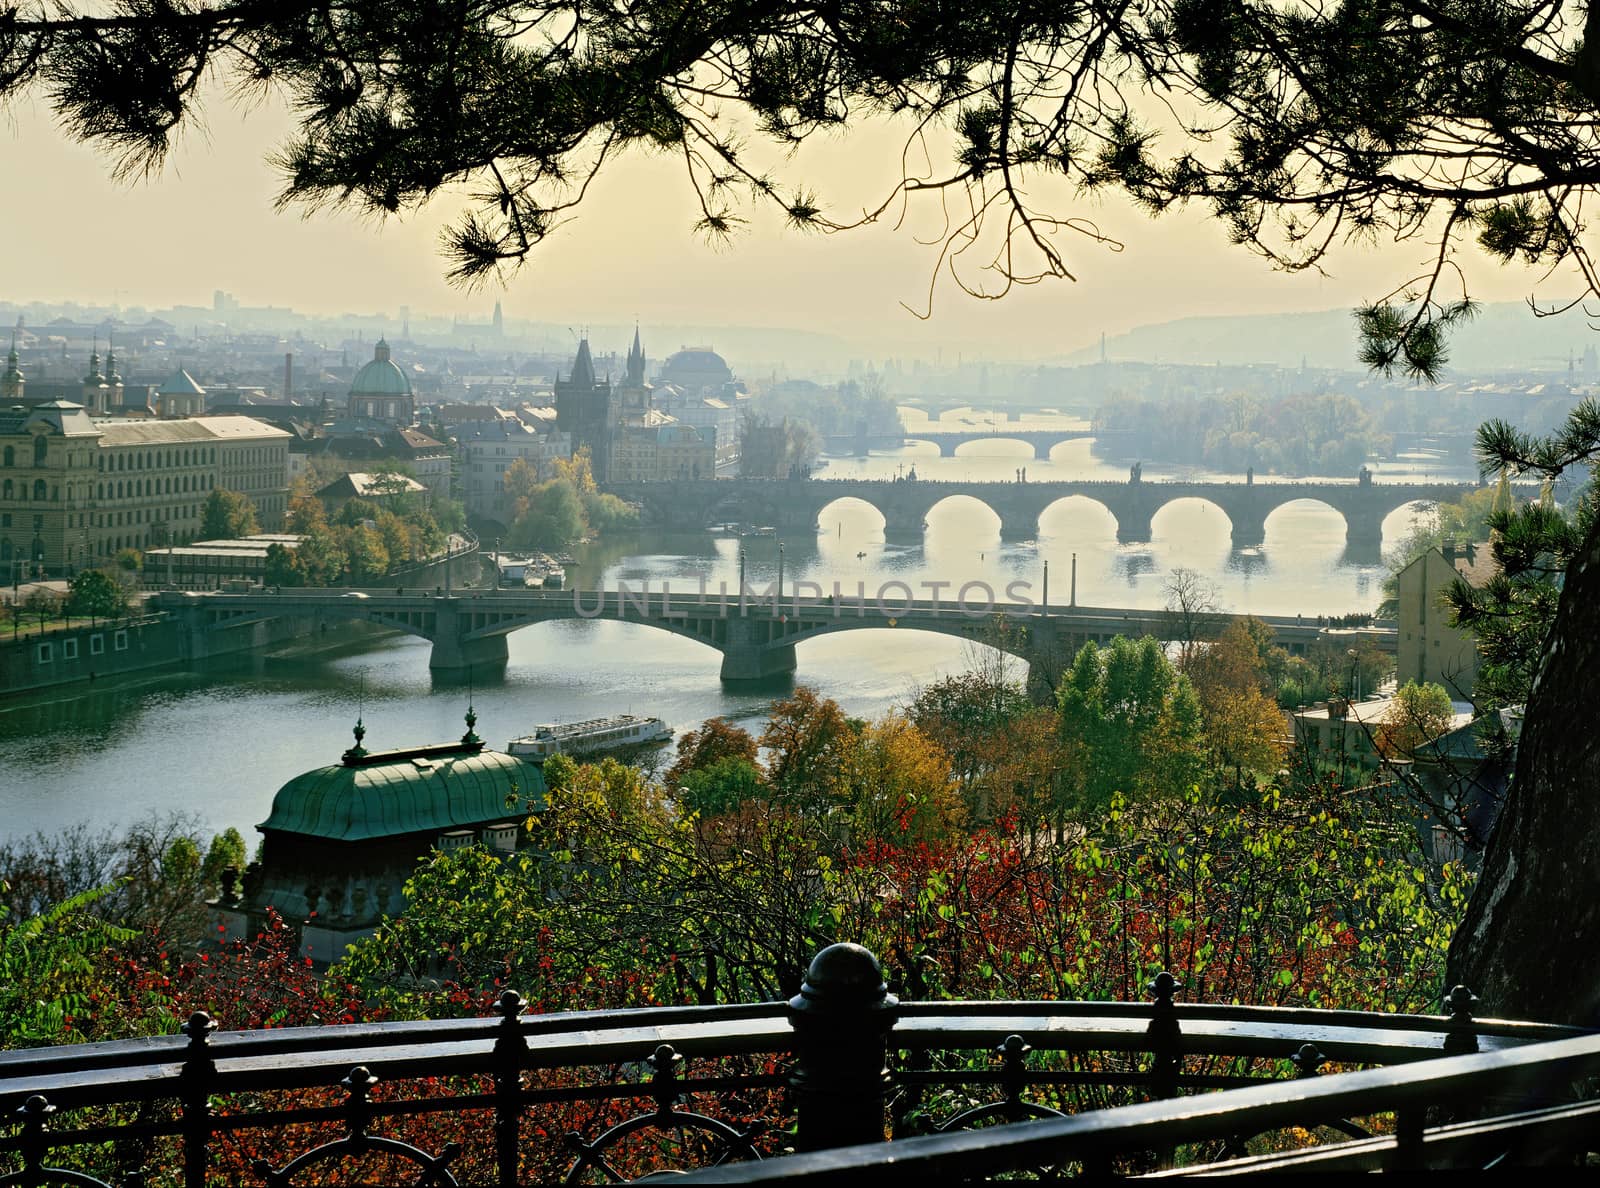 Prague bridges by anvodak